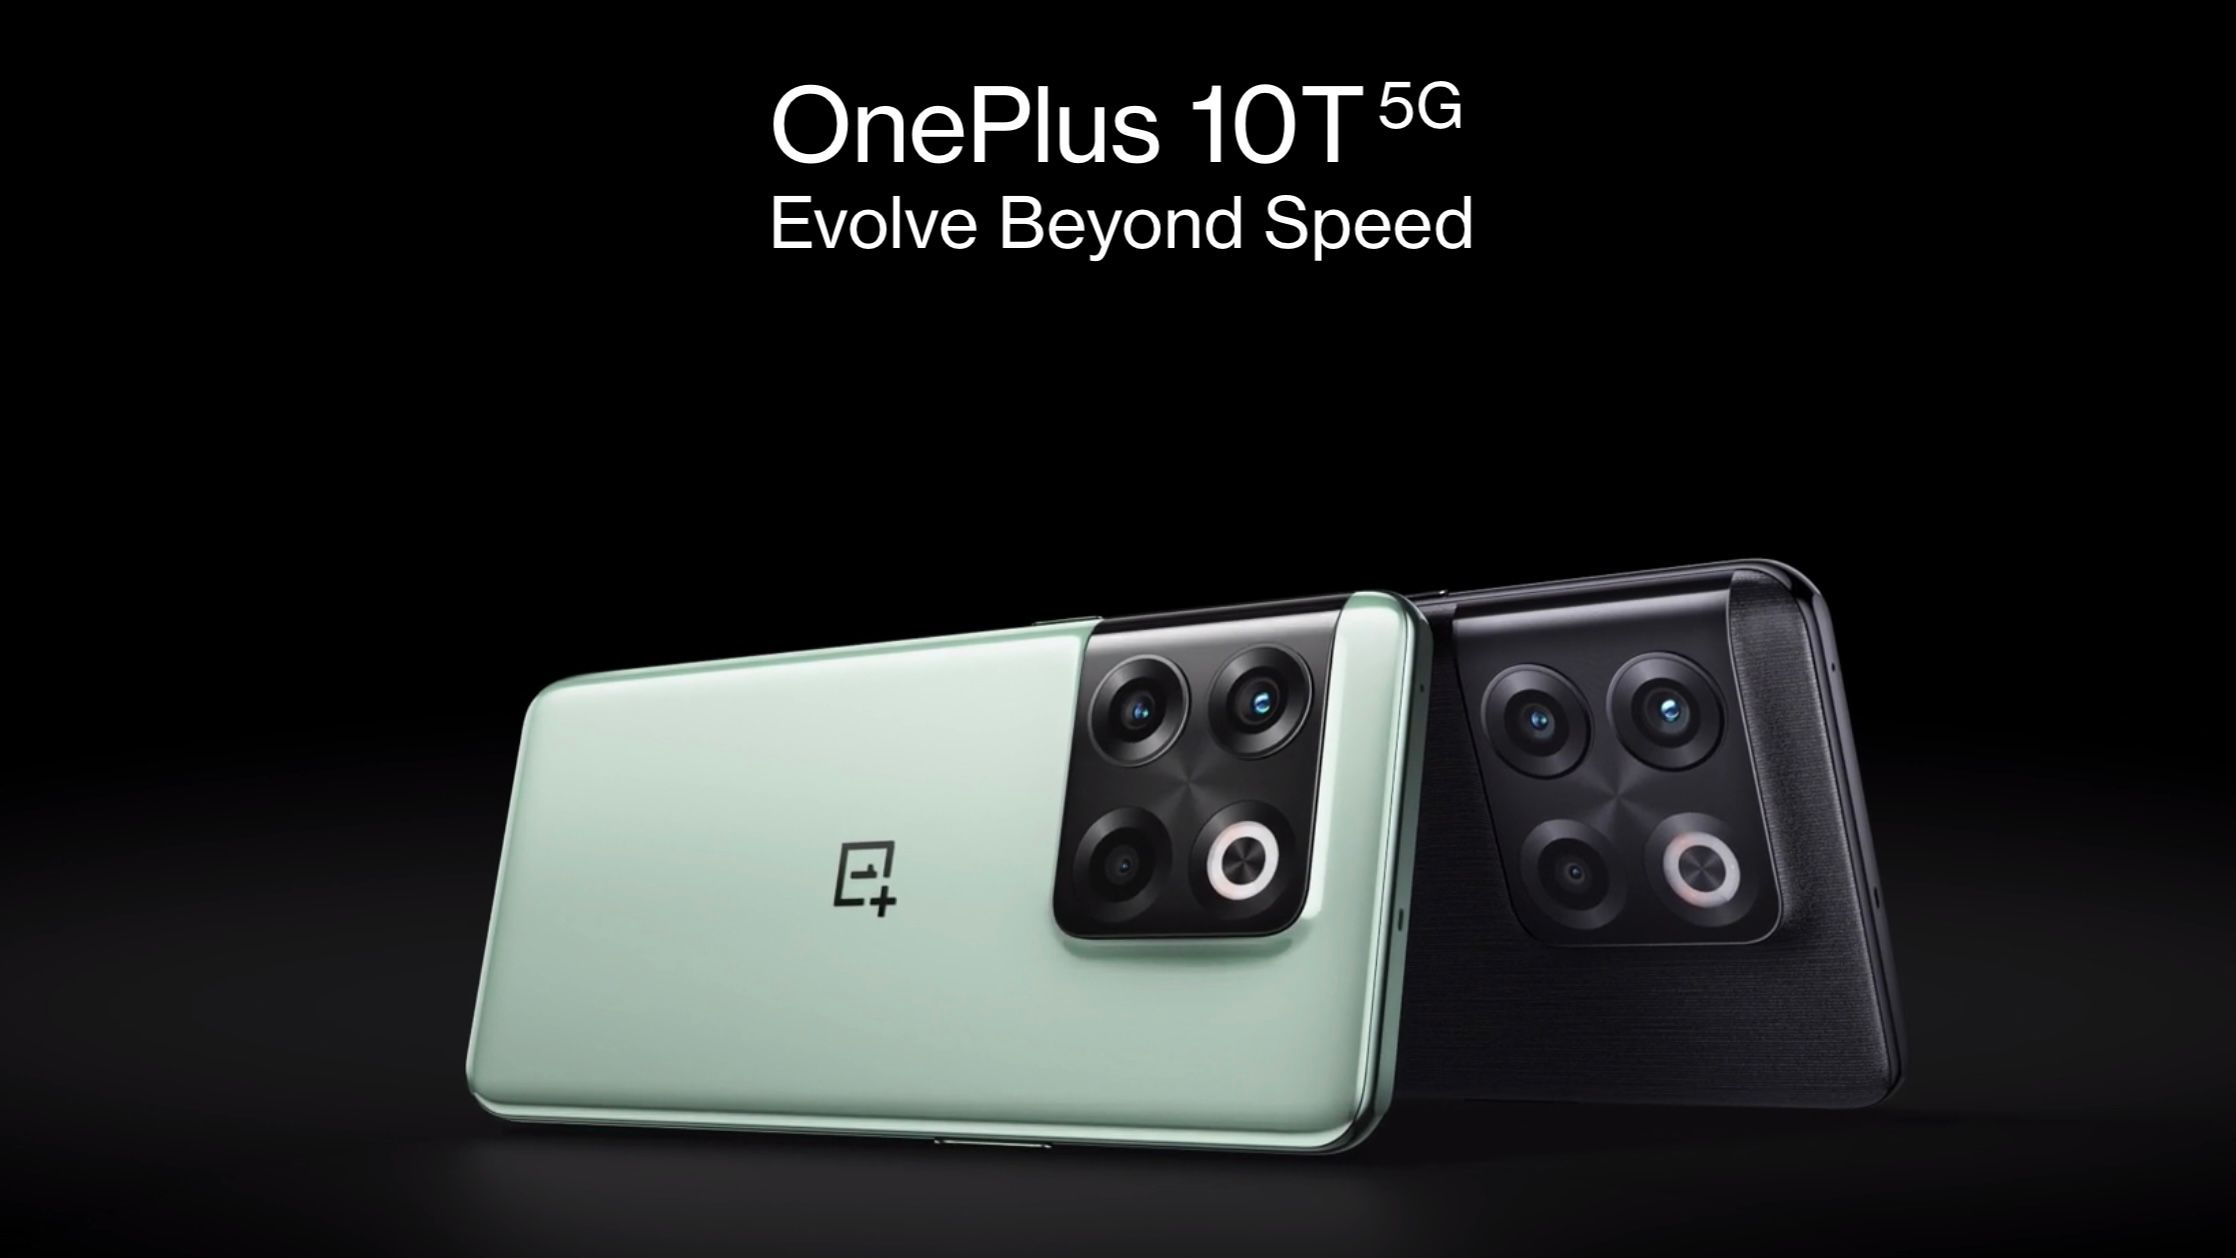 OnePlus 10T 5G: Back to Basics